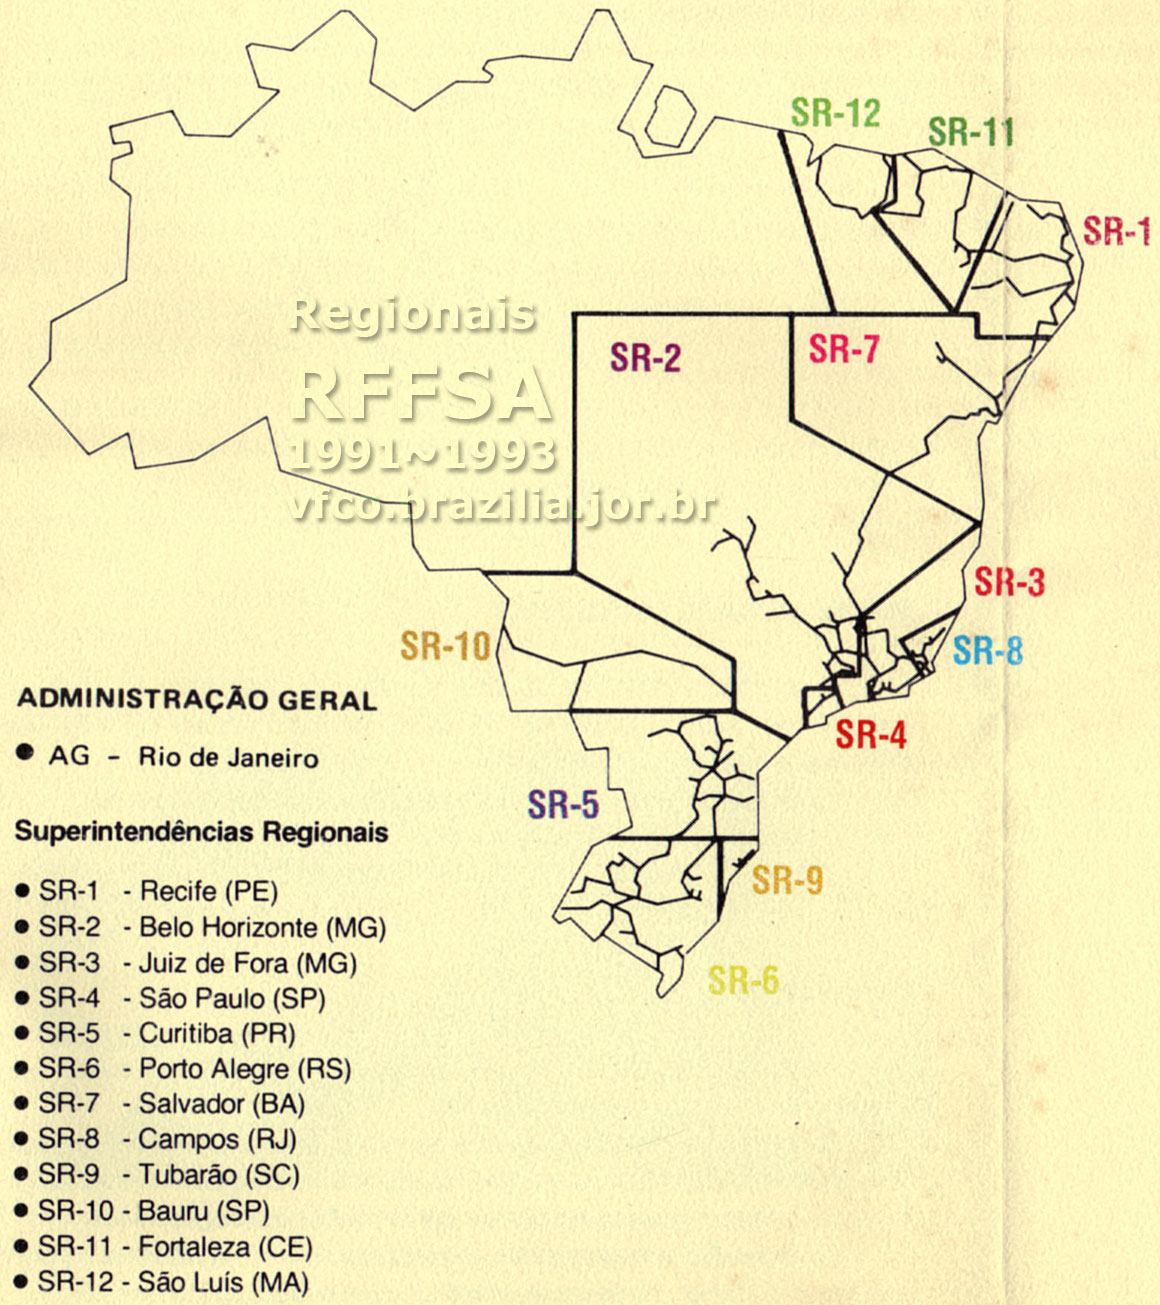 Os trilhos e as 12 Superintendências Regionais da RFFSA - Rede Ferroviária Federal em um mapa esquemático do período entre 1991 e 1993